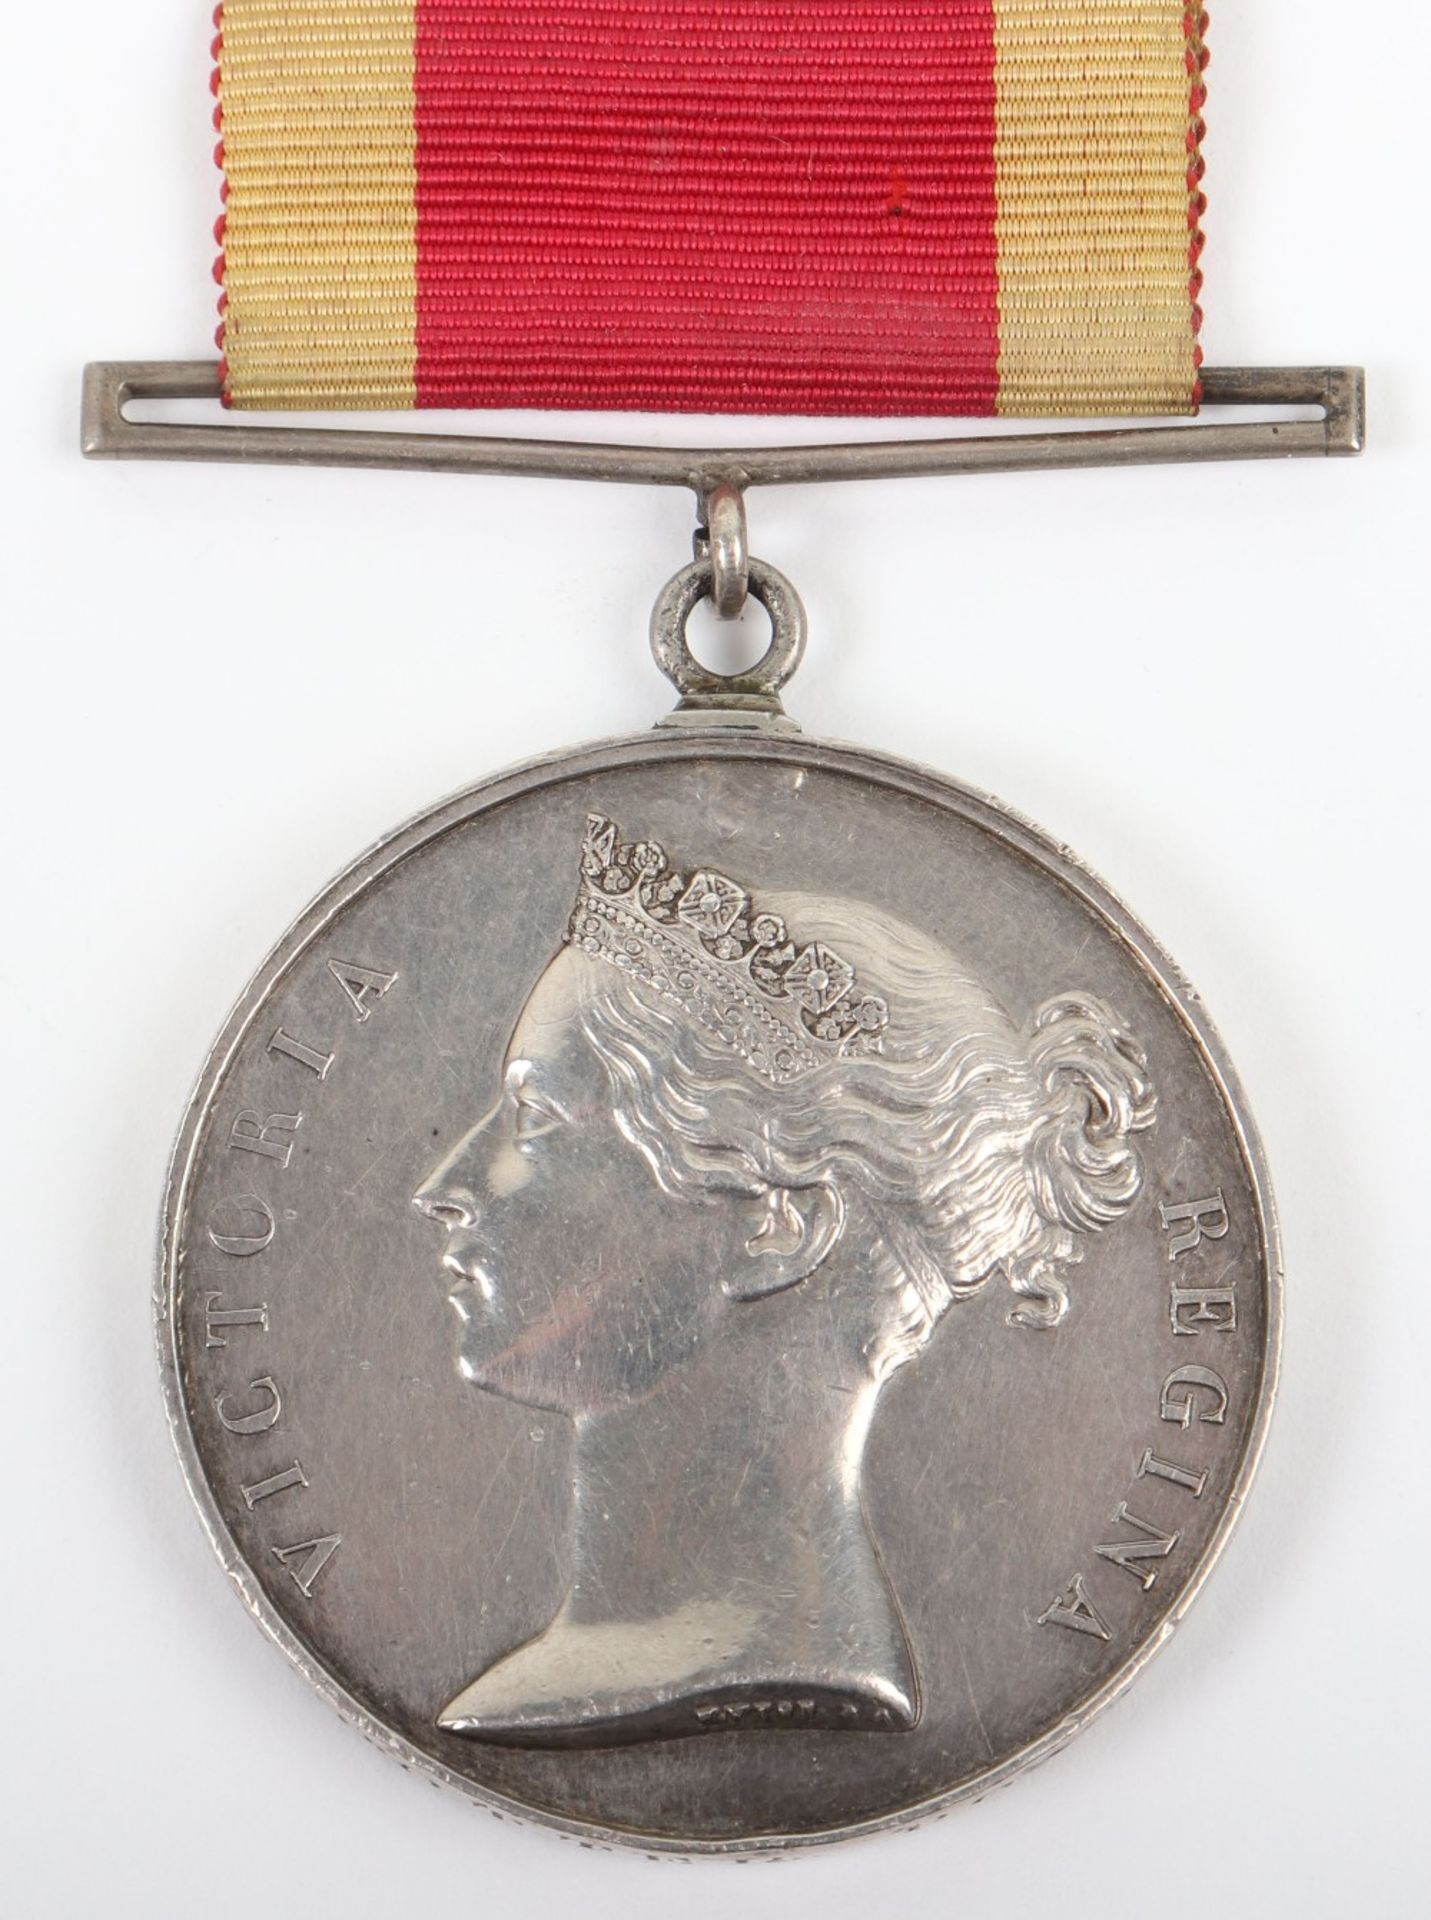 Victorian China 1842 War Medal Royal Marines - Image 2 of 5